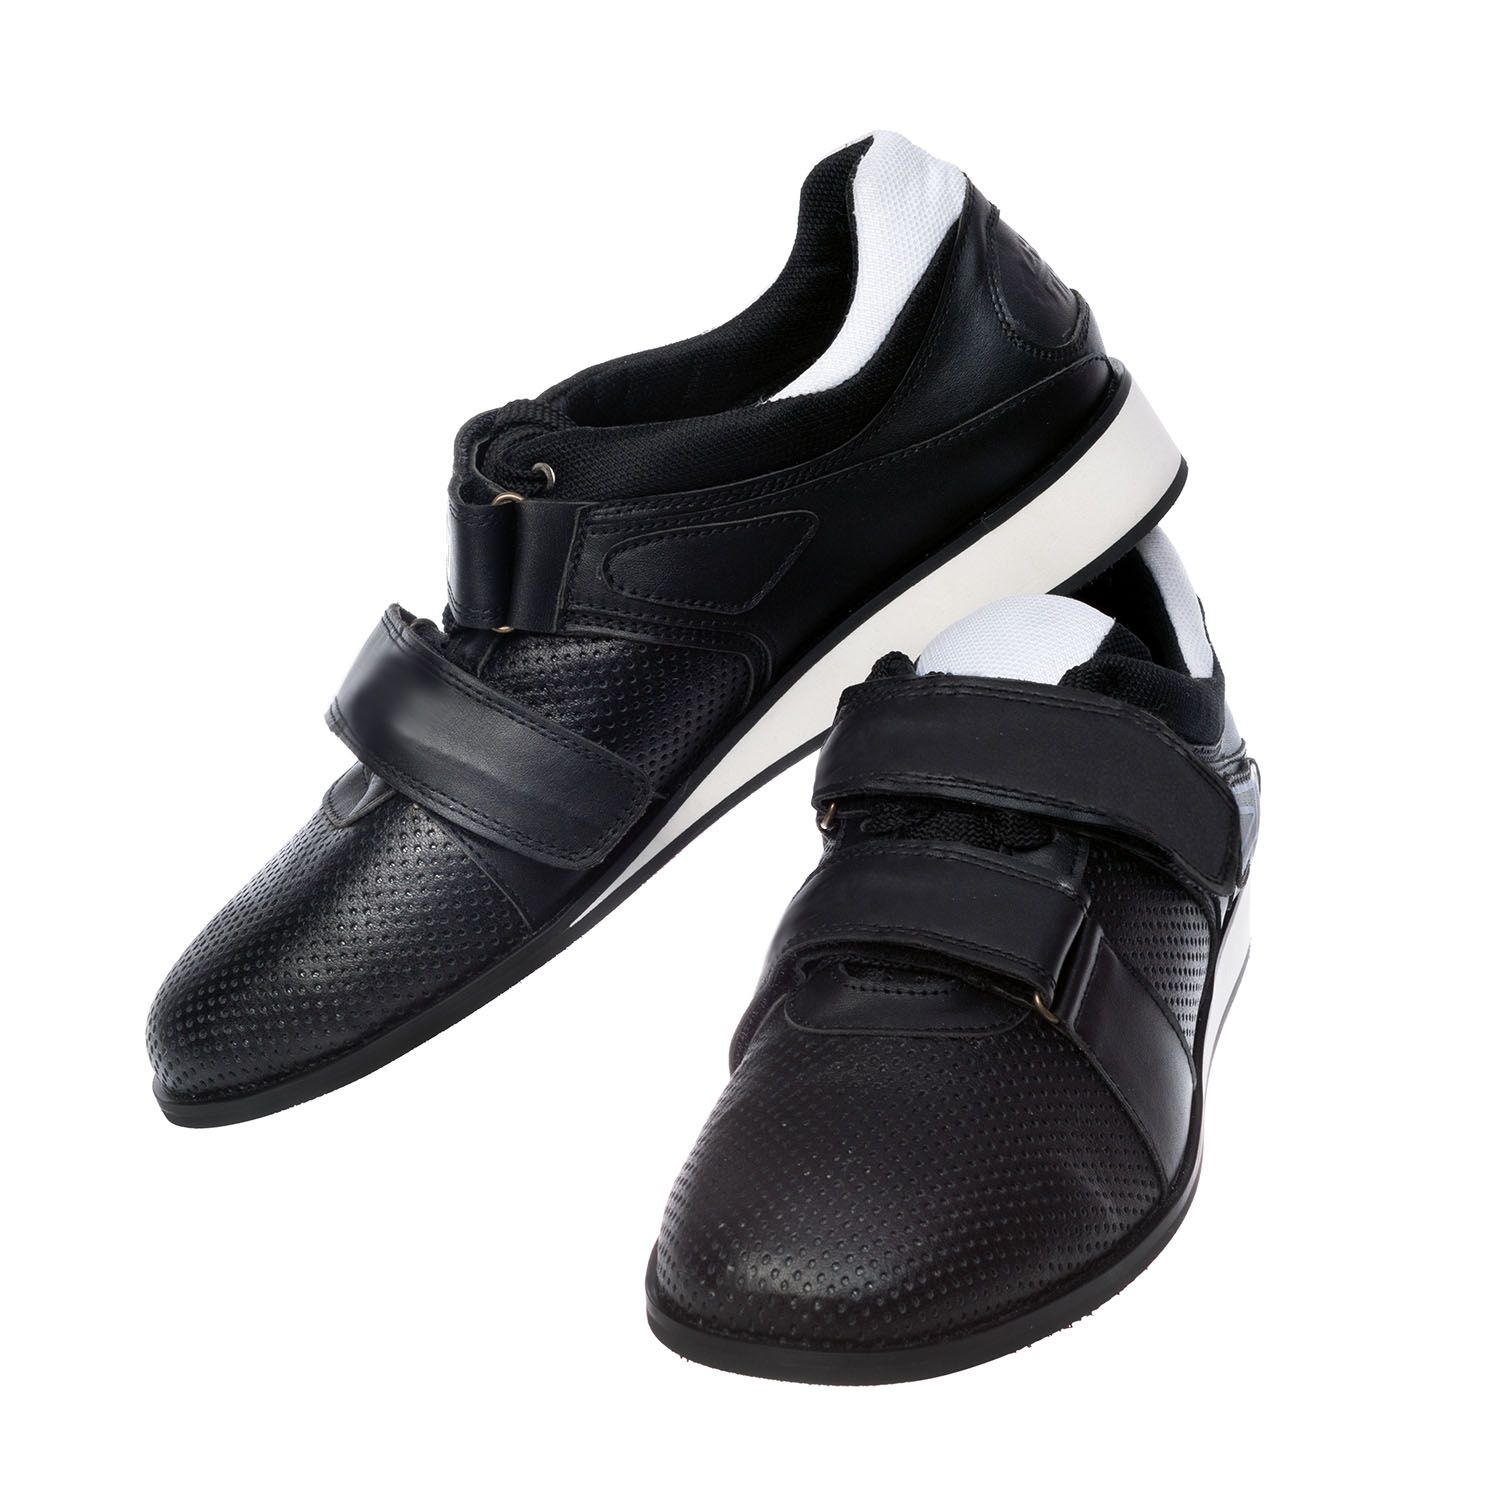 Weightlifting shoes Zhabotinsky Classic, black, size 36 (UKR)